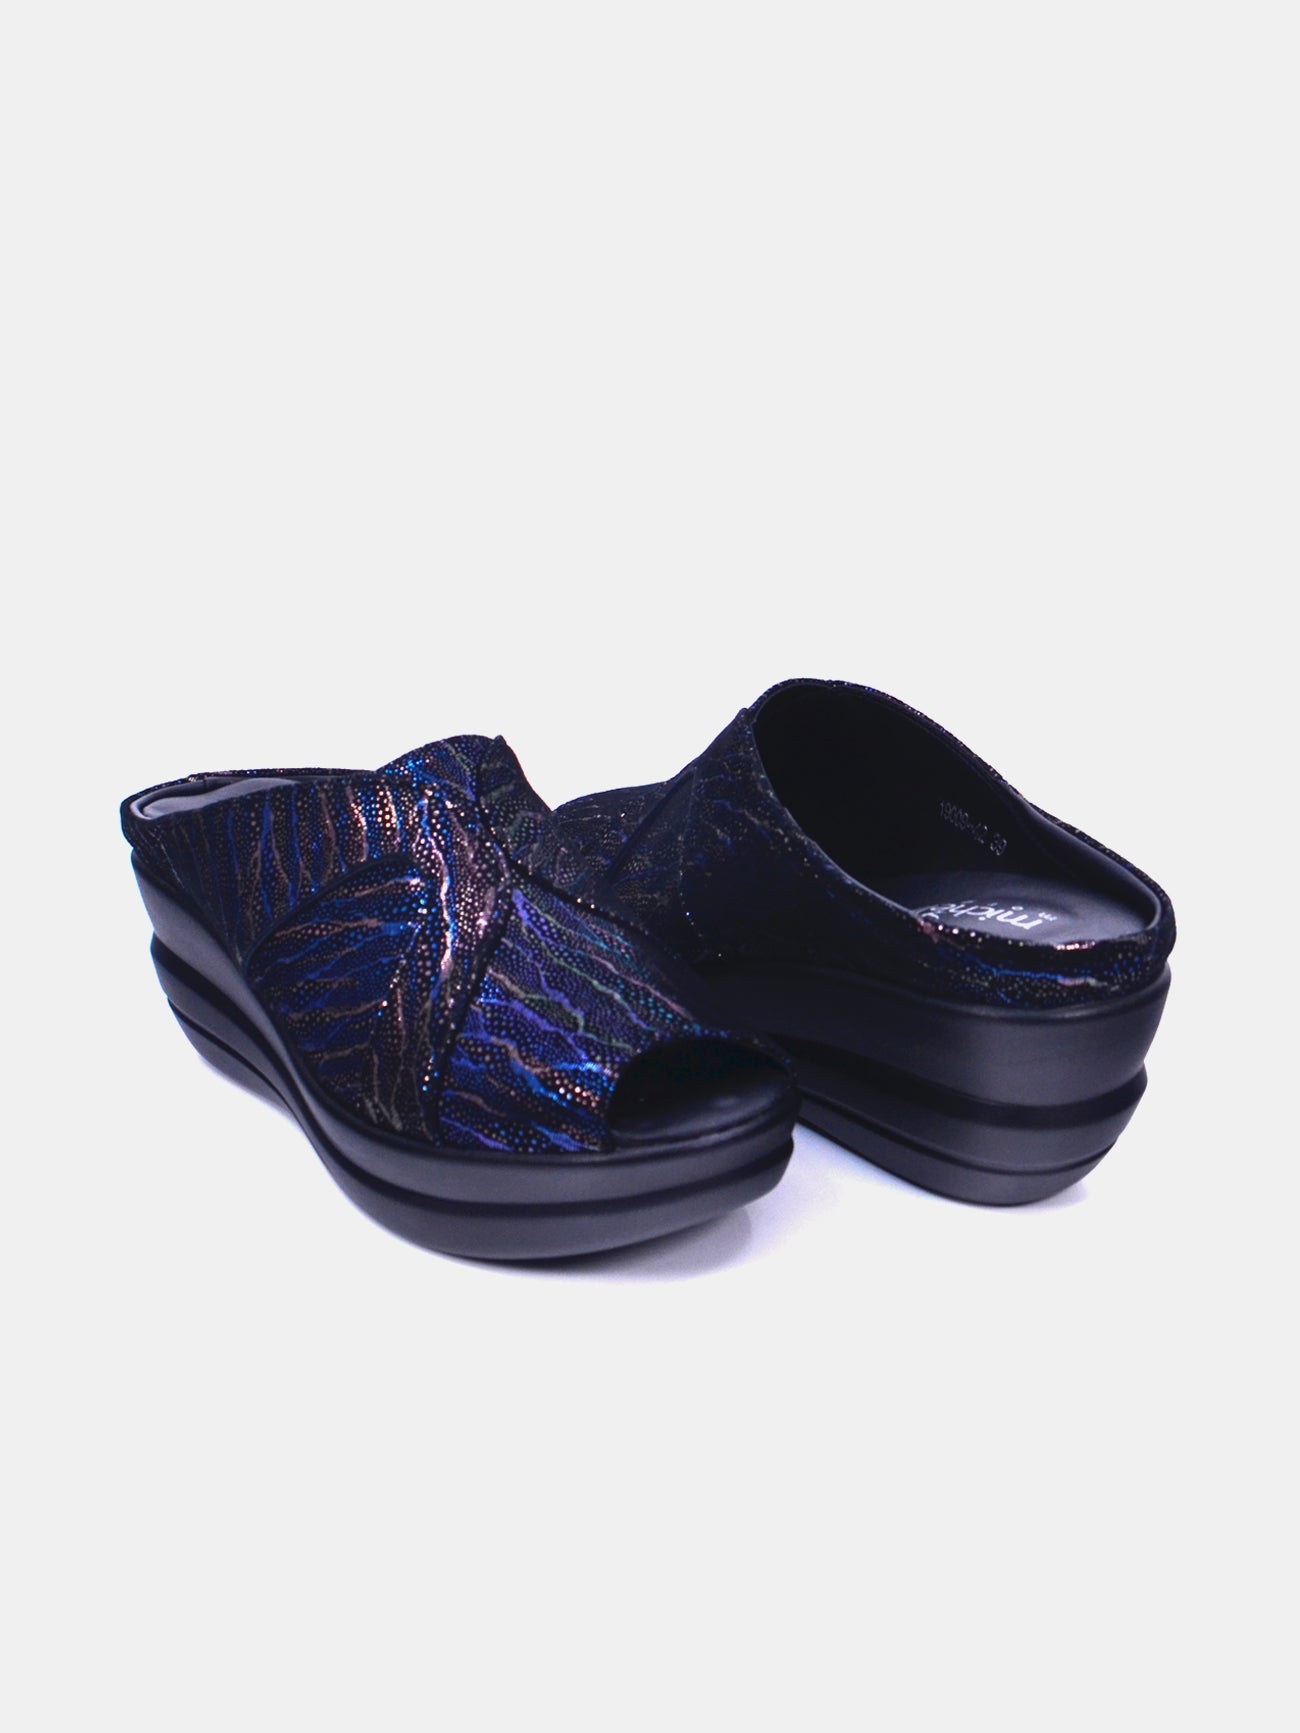 Michelle Morgan 19009-42 Women's Wedge Sandals #color_Blue